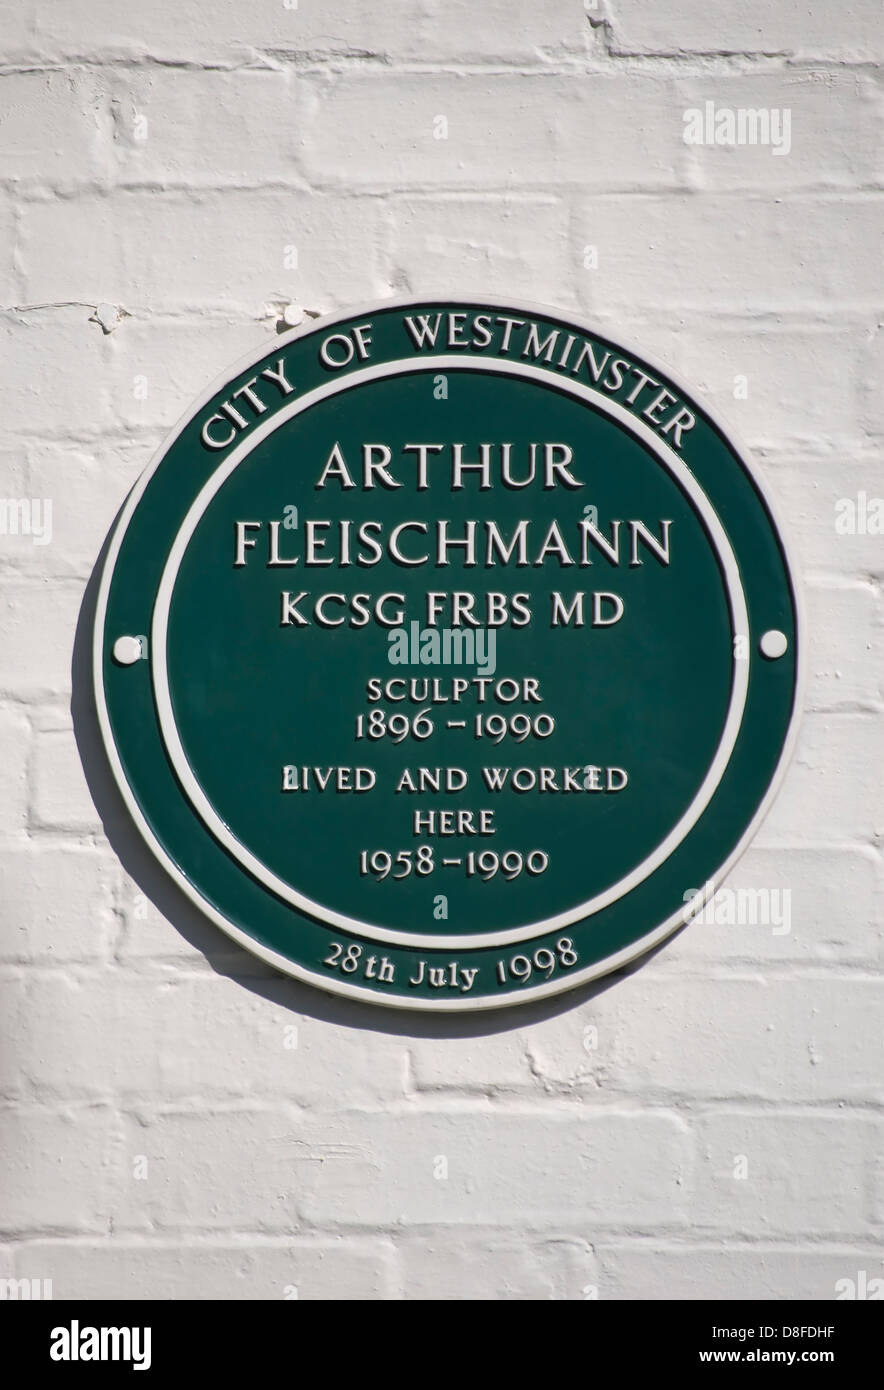 City of westminster plaque verte le marquage d'un sculpteur de la maison Arthur Fleischmann, St John's Wood, Londres, Angleterre Banque D'Images